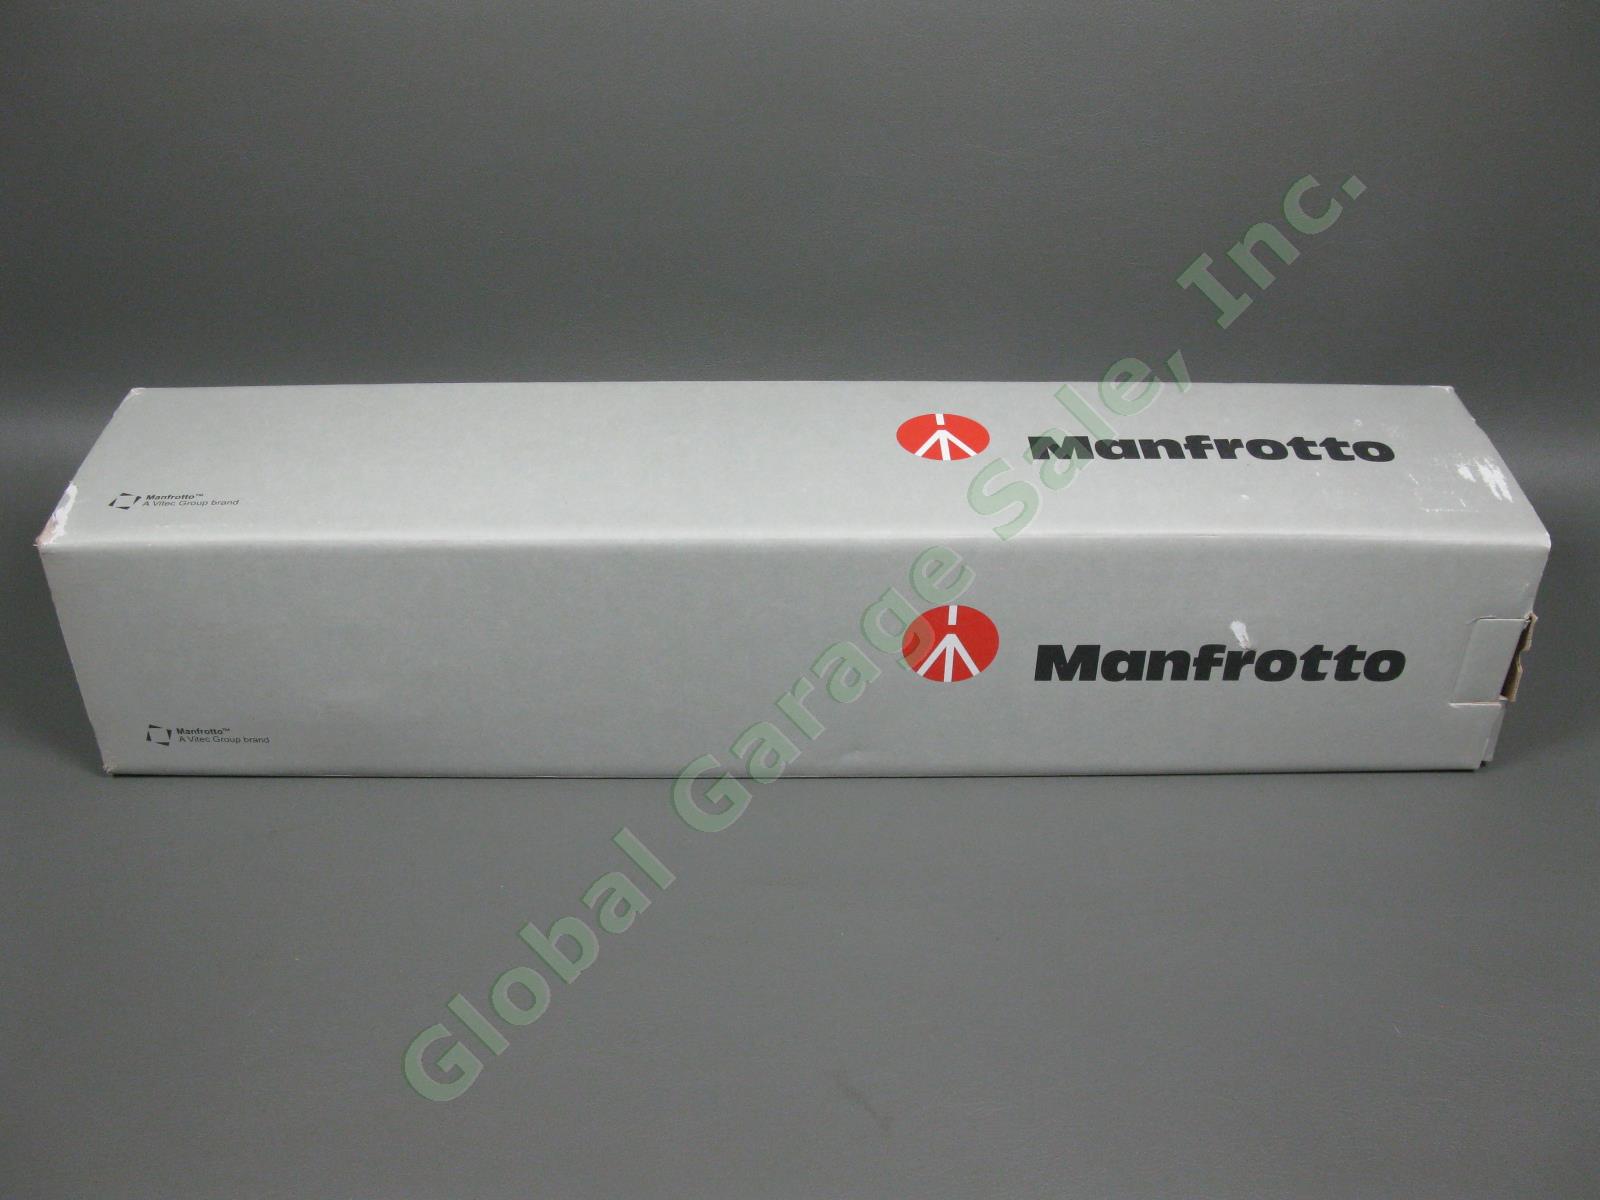 Manfrotto 190 CF Carbon Fiber Camera Tripod Magnesium Ball Head CIB 190CXPRO3 NR 7